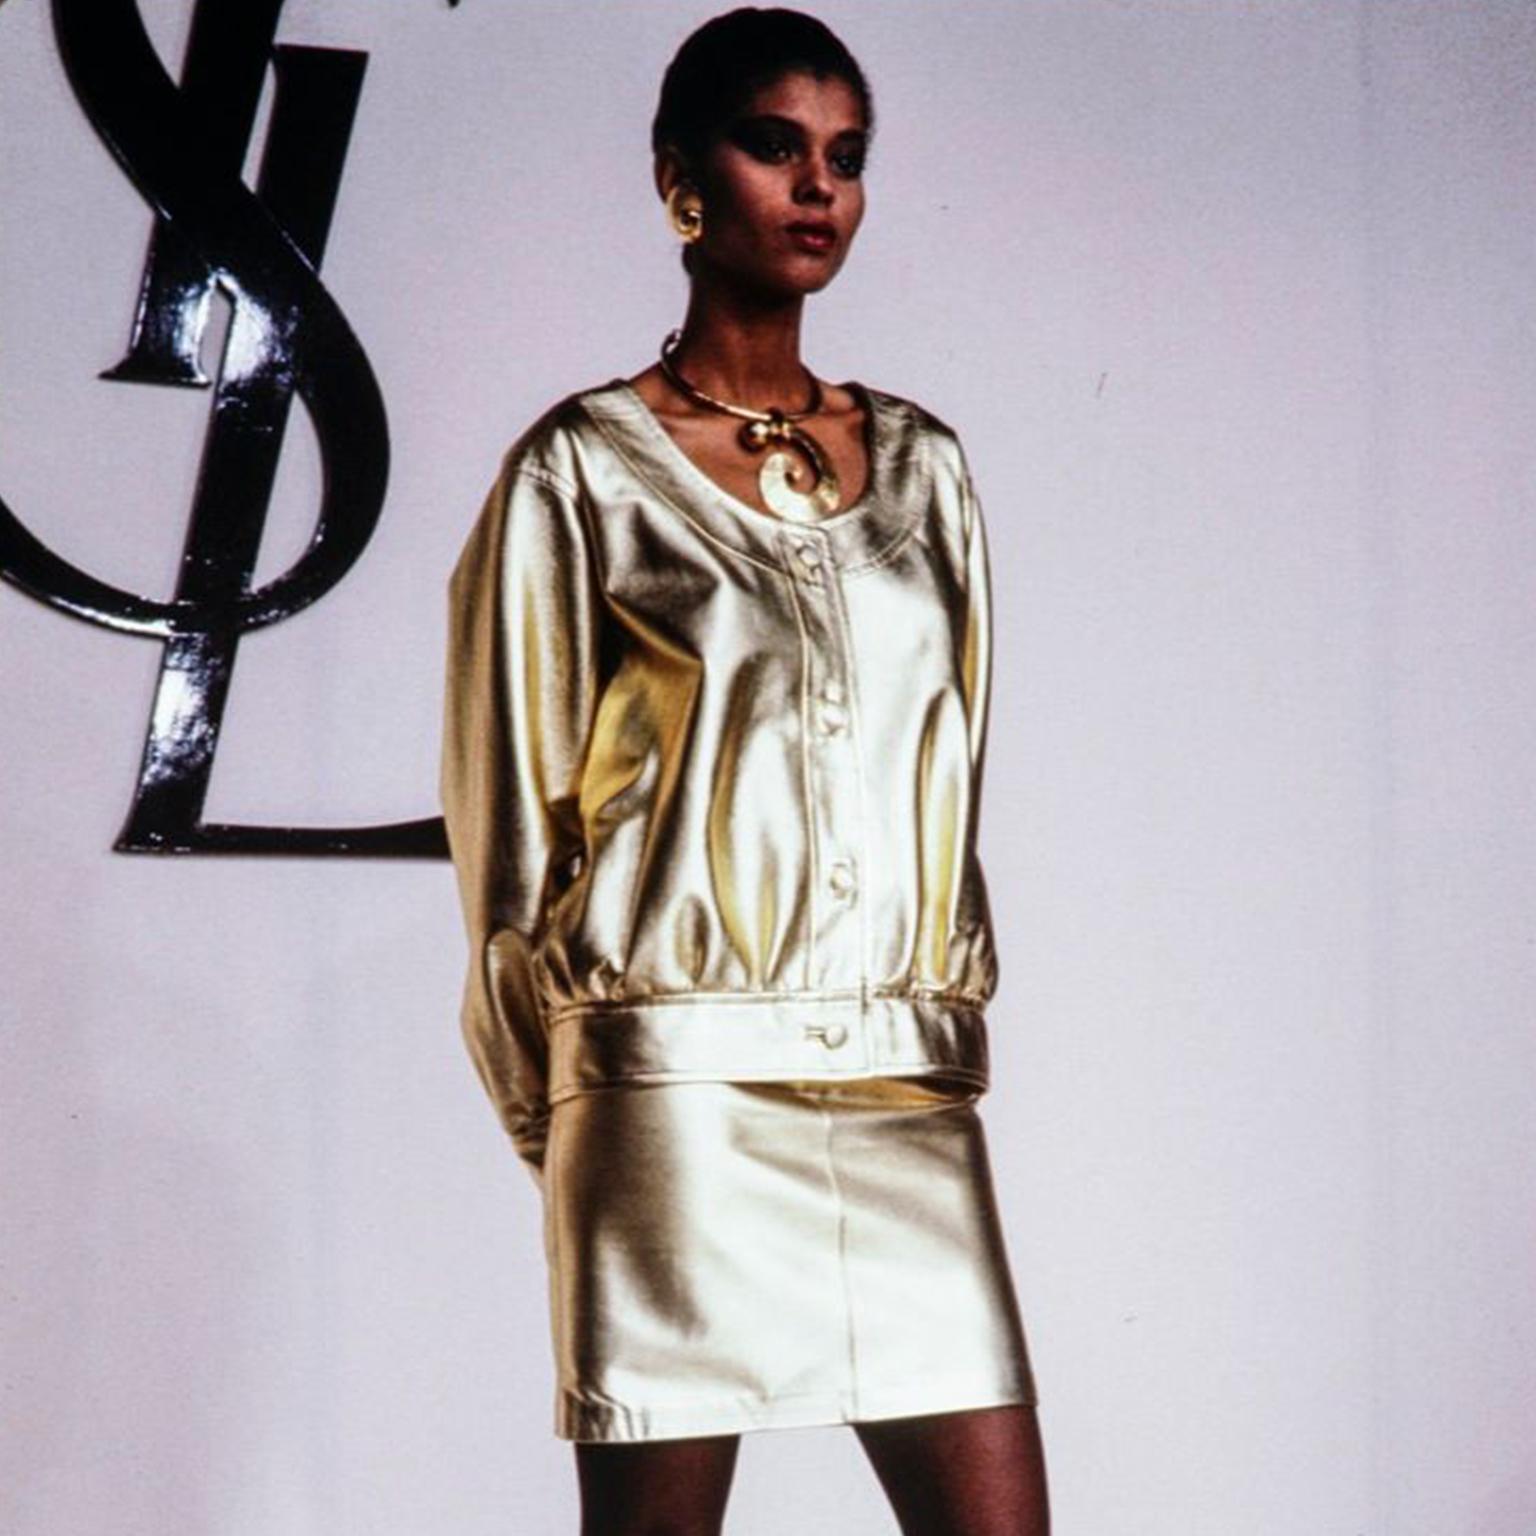 Superbe veste vintage d'Yves Saint Laurent en cuir argenté. Cette superbe veste YSL a des boutons centraux sur le devant, des manches surdimensionnées, un large col rond et elle est entièrement doublée. Nous avons documenté cette veste en or de la